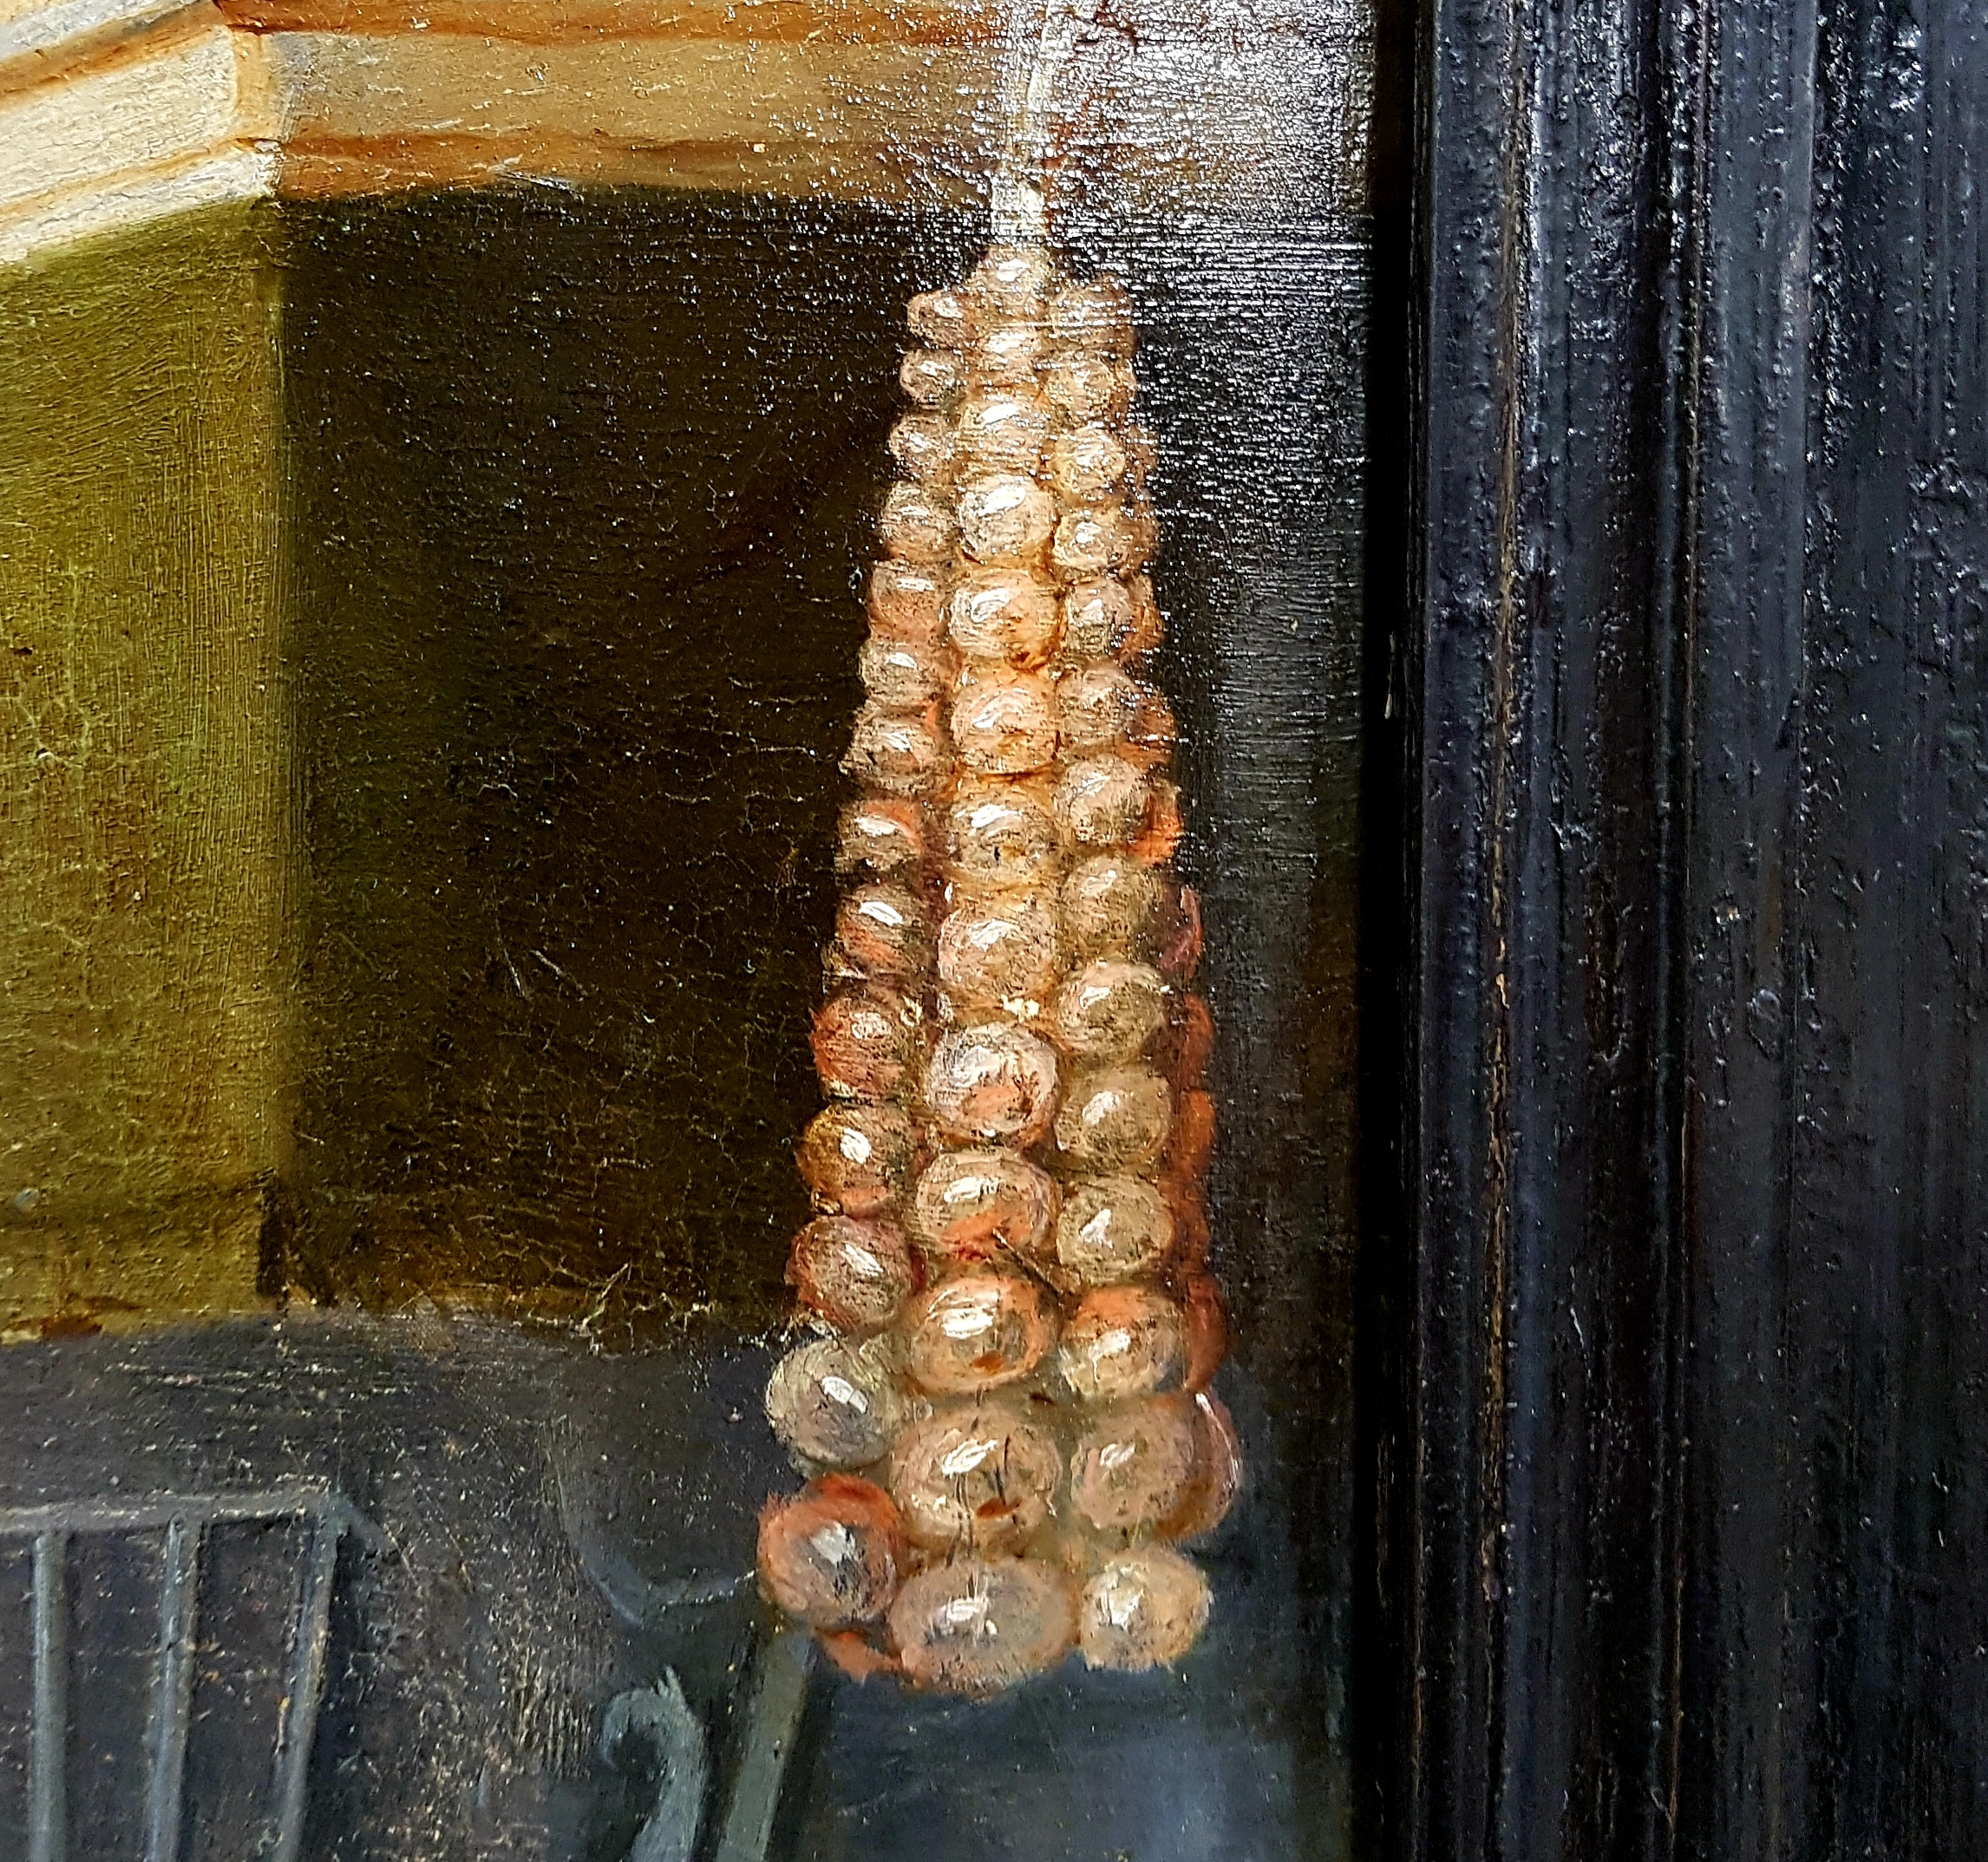 Streng met uien aan een schouw op anoniem schilderij uit 16e eeuw